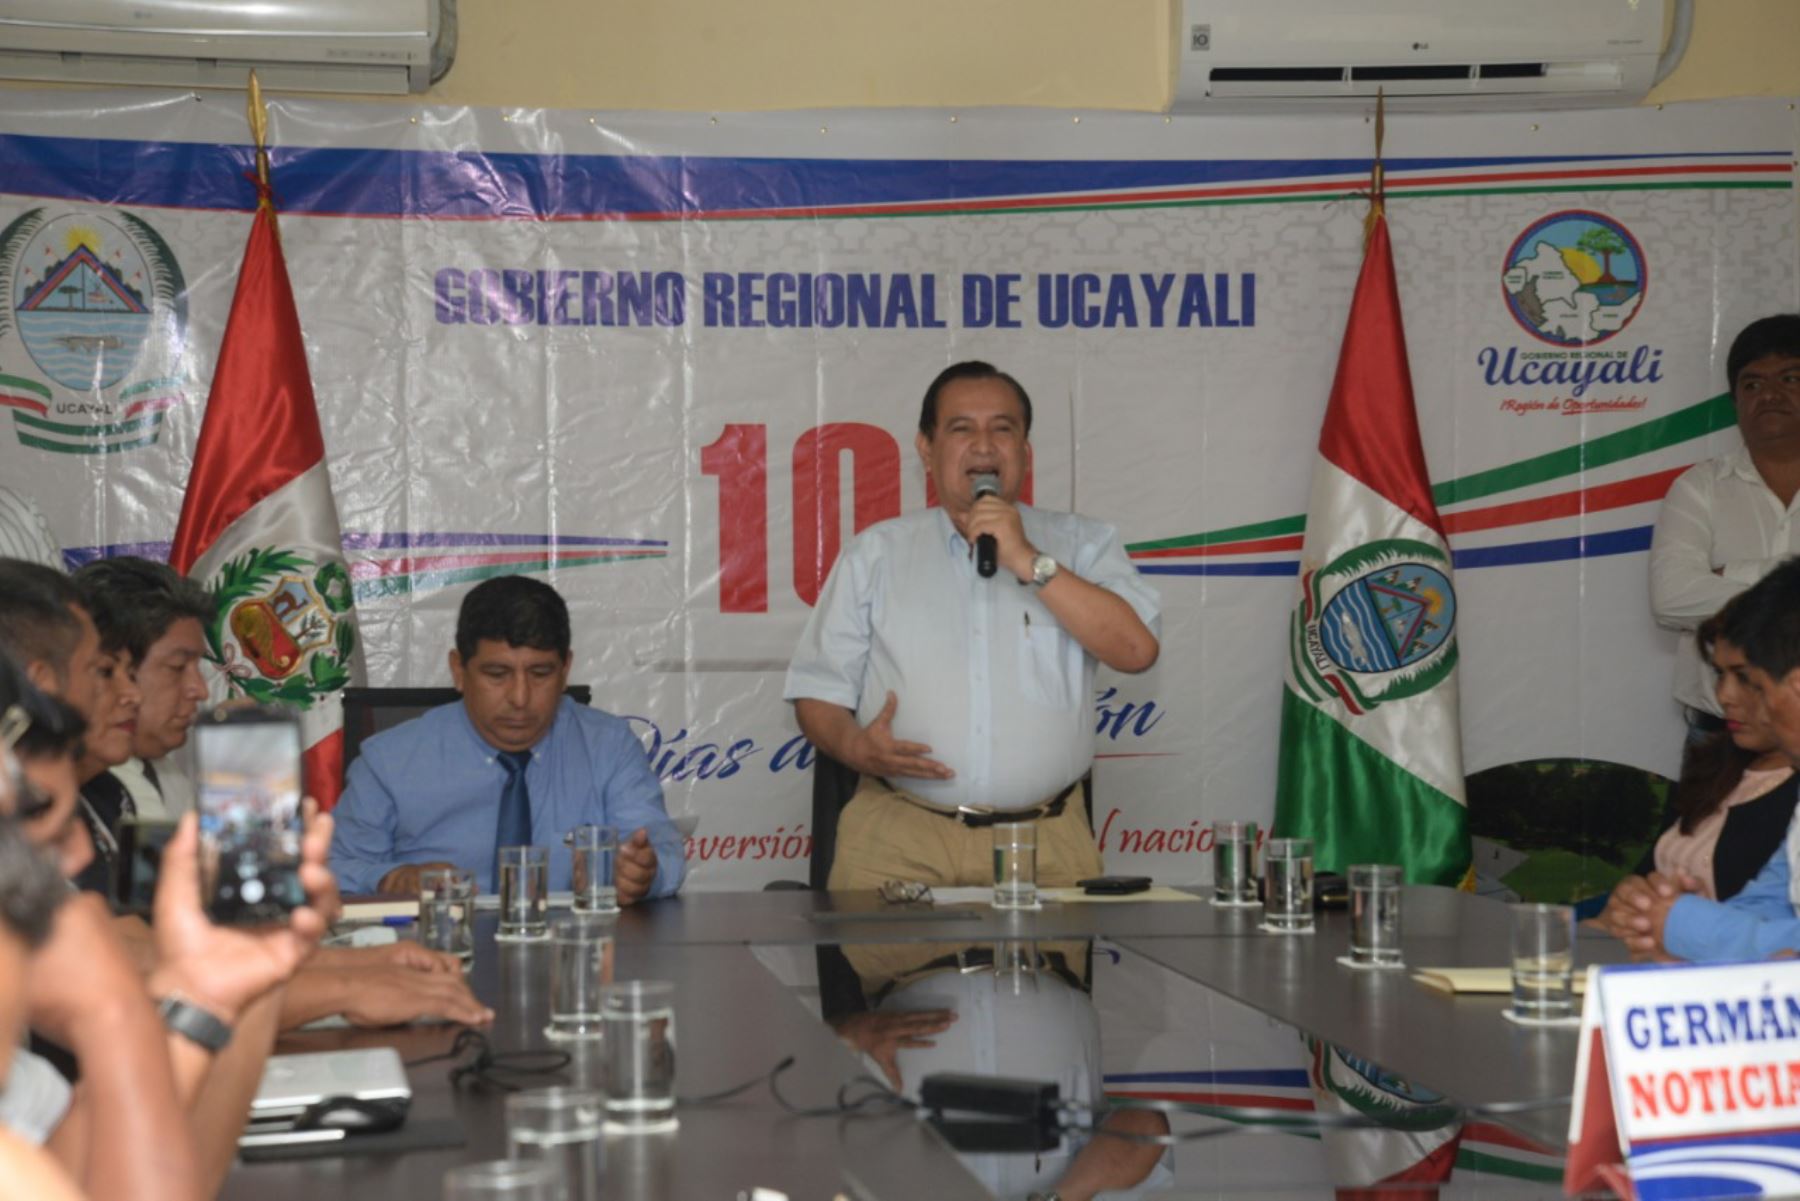 El gobernador regional de Ucayali, Francisco Pezo Torres, anunció la construcción de mil viviendas prefabricadas en el distrito de Yarinacocha.